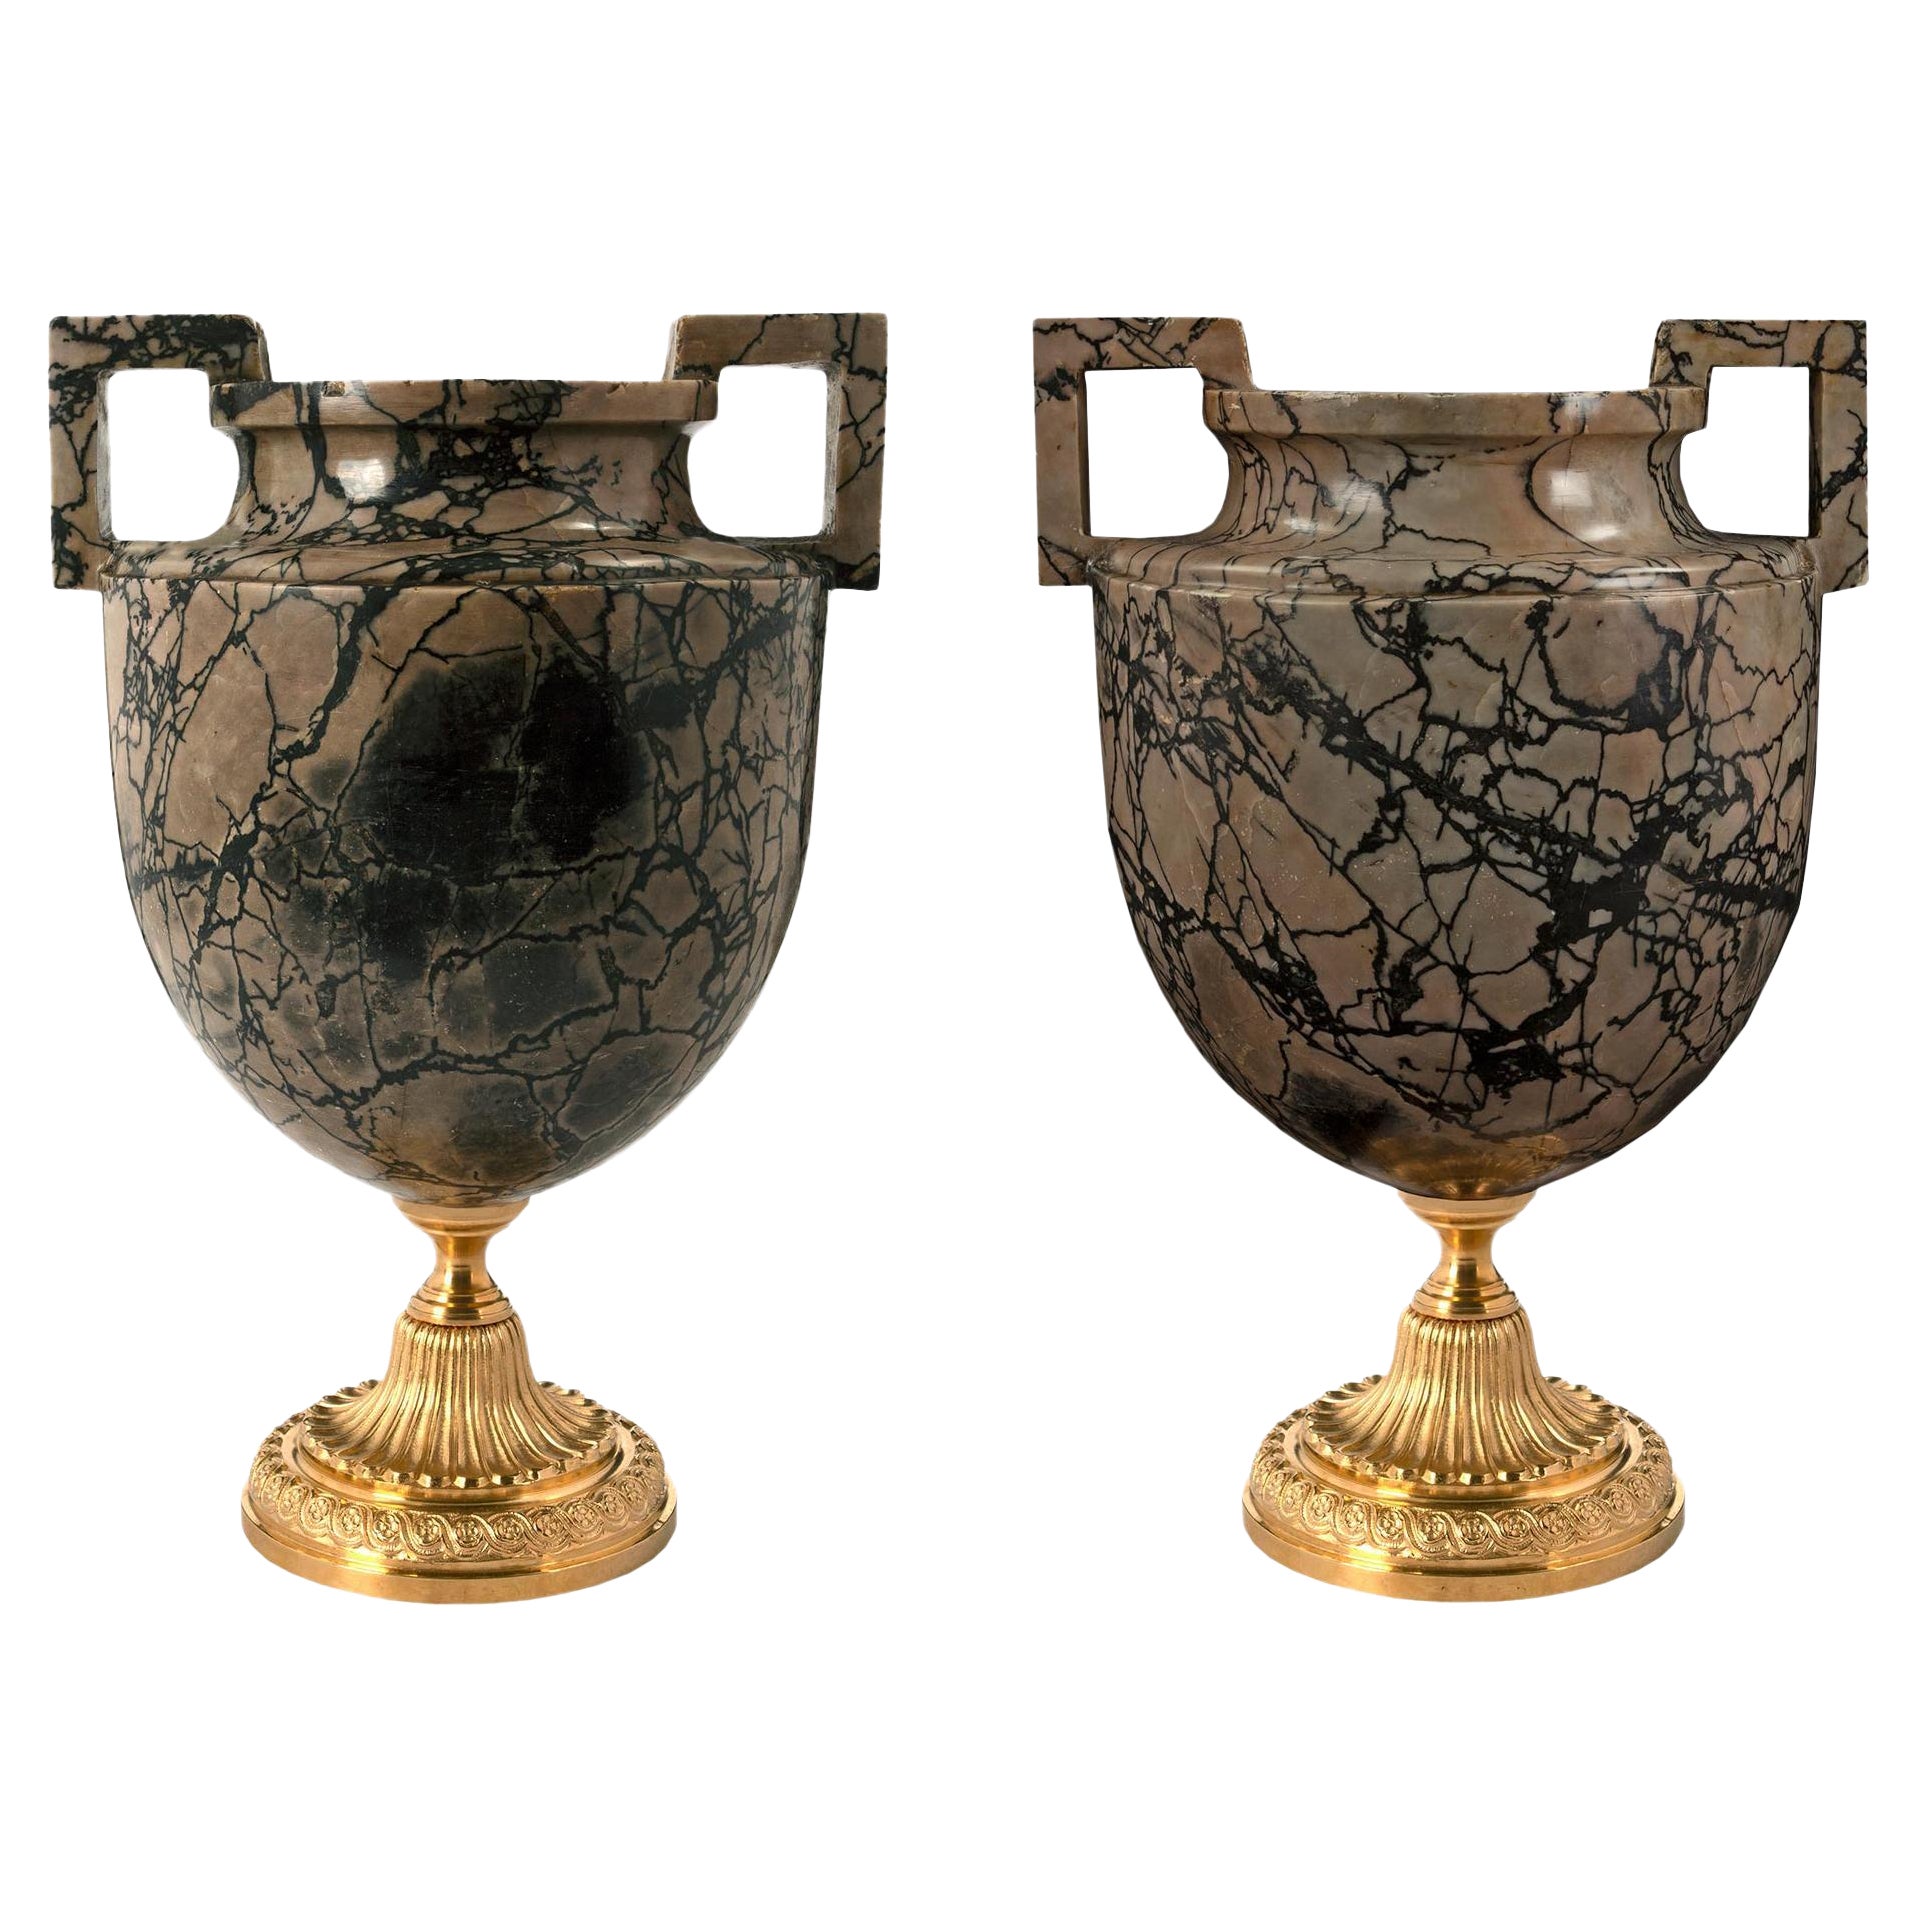 Paire d'urnes italiennes de style néoclassique du milieu du 19e siècle en marbre et bronze doré